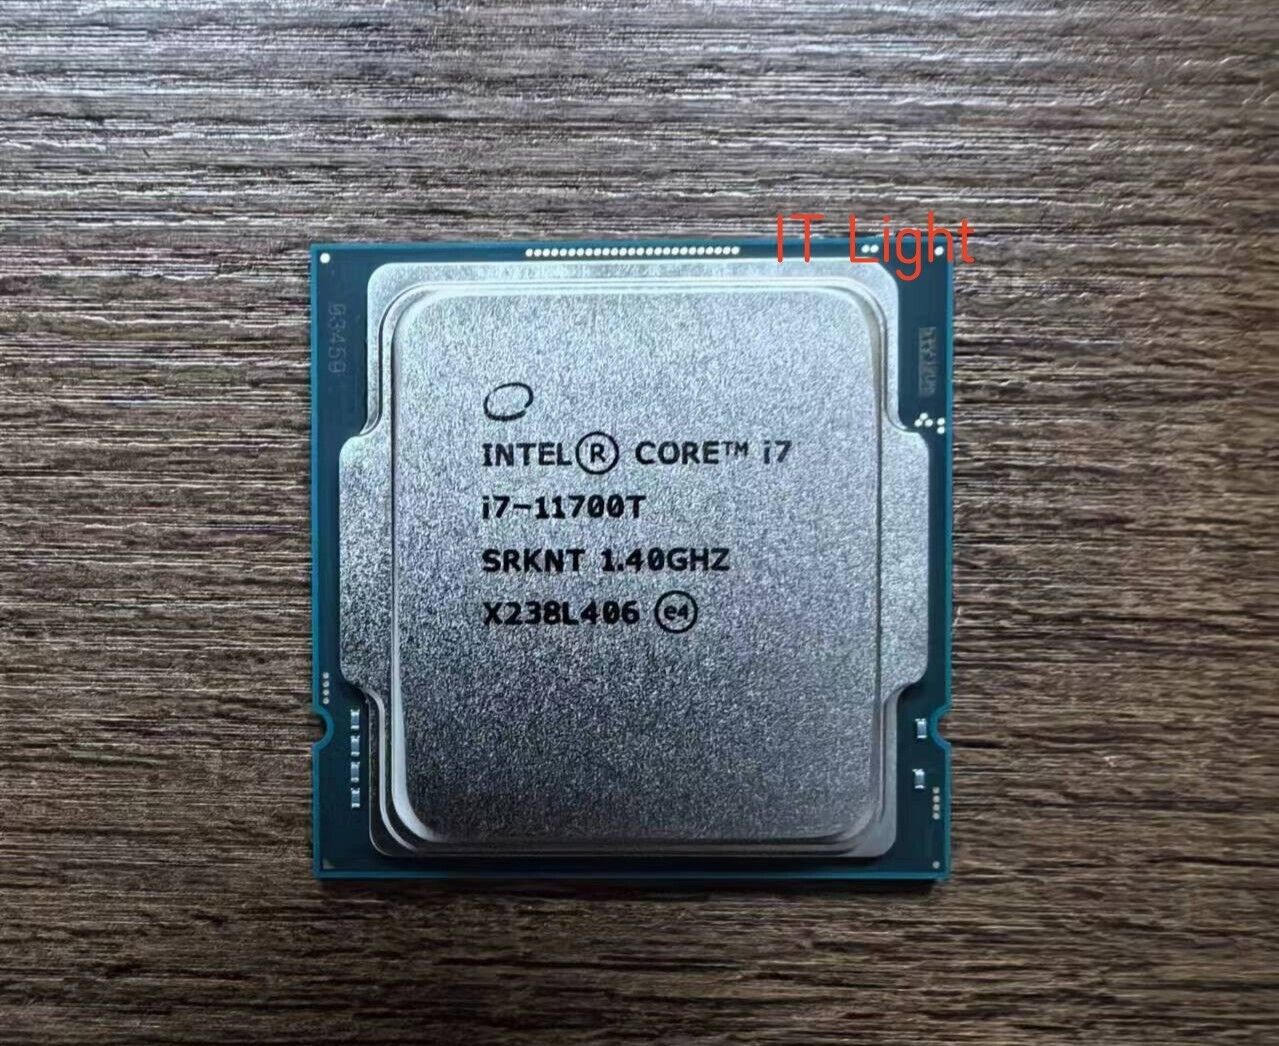 Intel Core i7-11700T 8-core 16-thread 1.40GHz 35W LGA1200 CPU processor